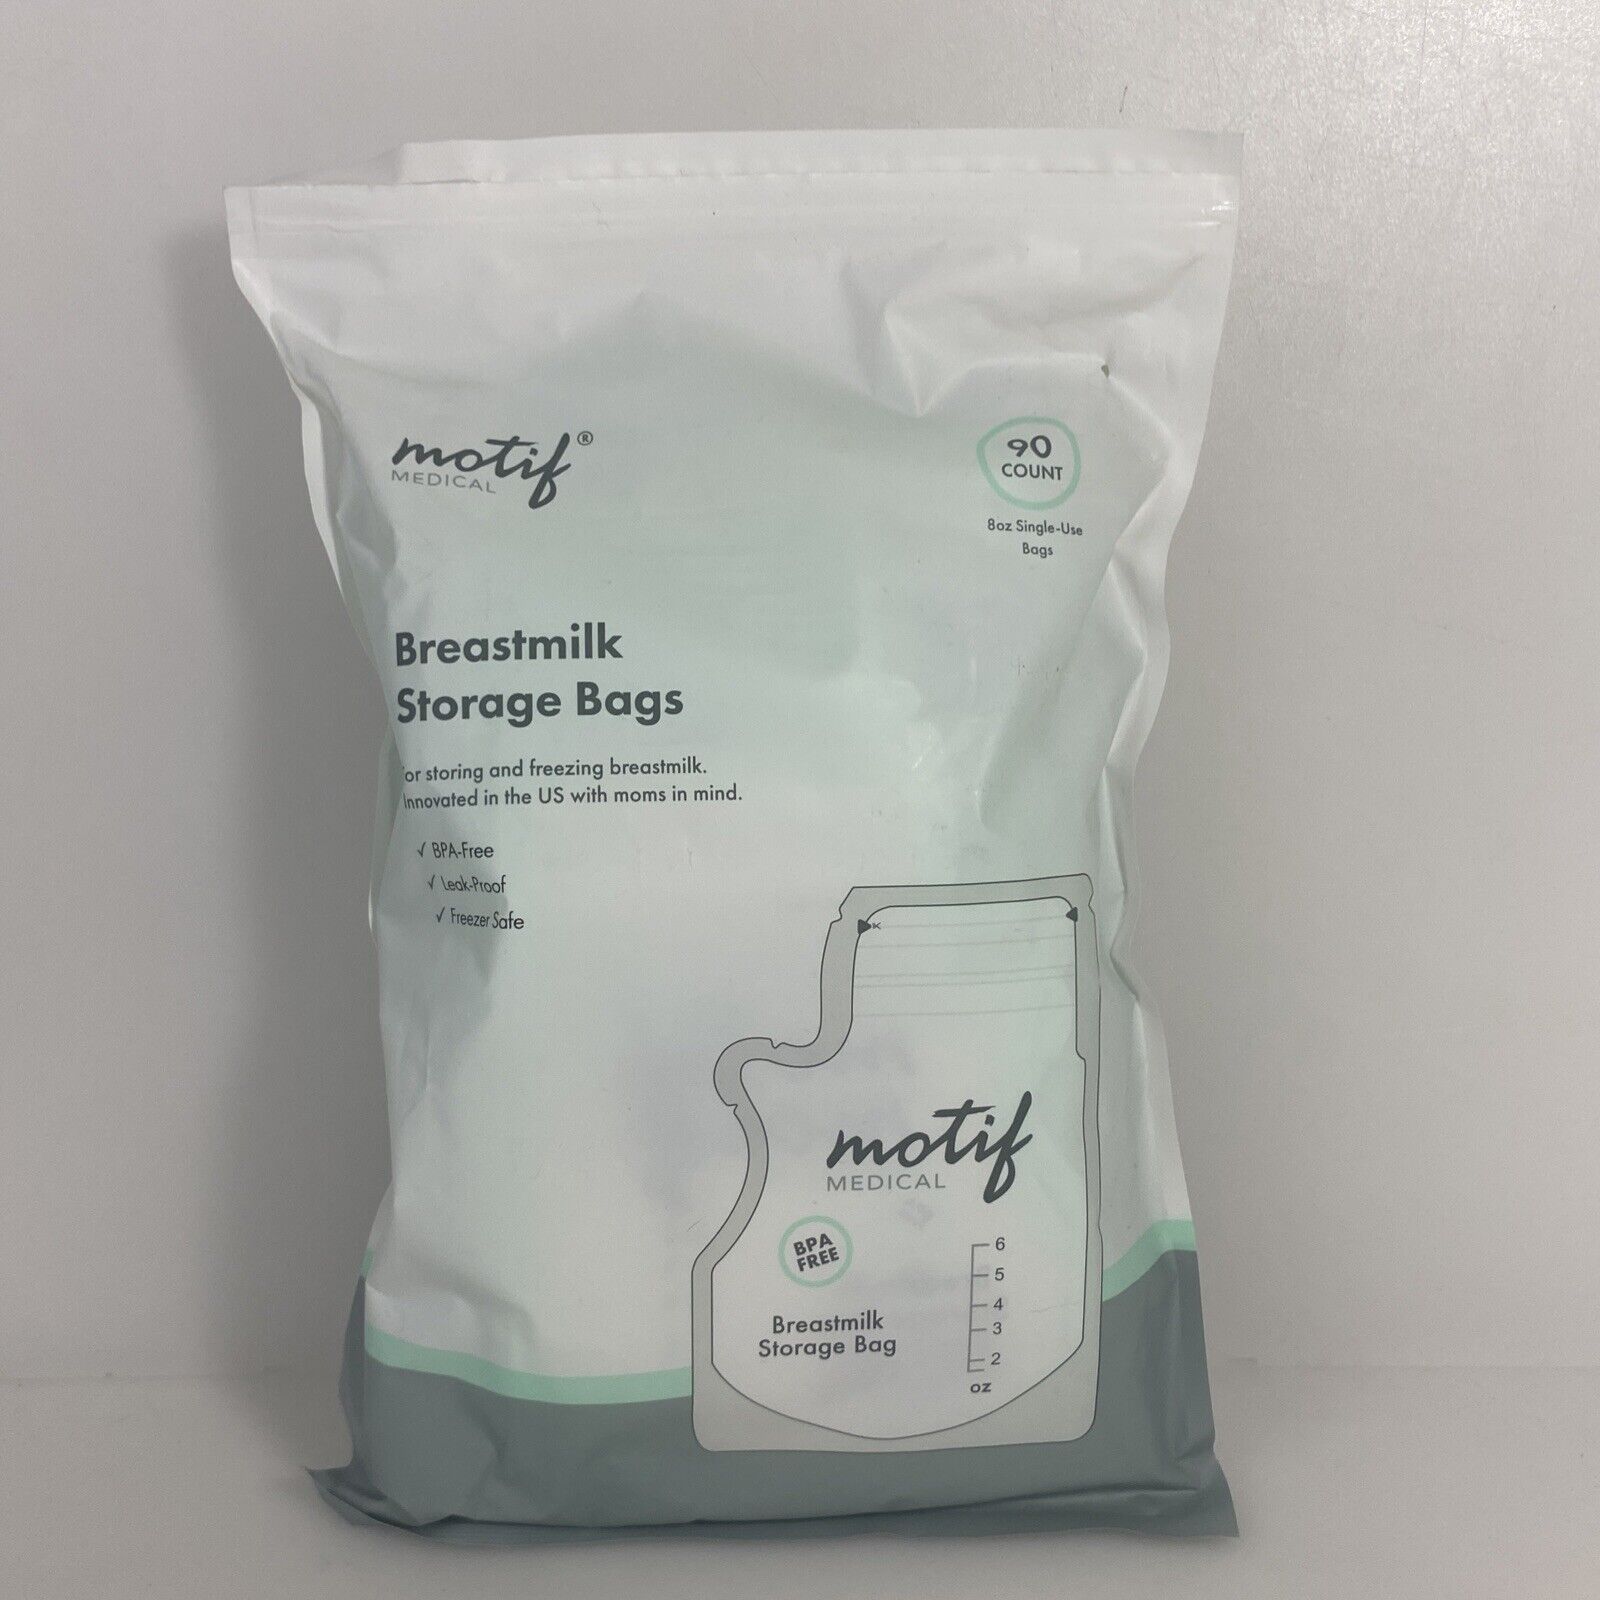 Motif Breastmilk Storage Bags 90 Ct 8 oz BPA Free - Leak Proof - Easy Pour (G)